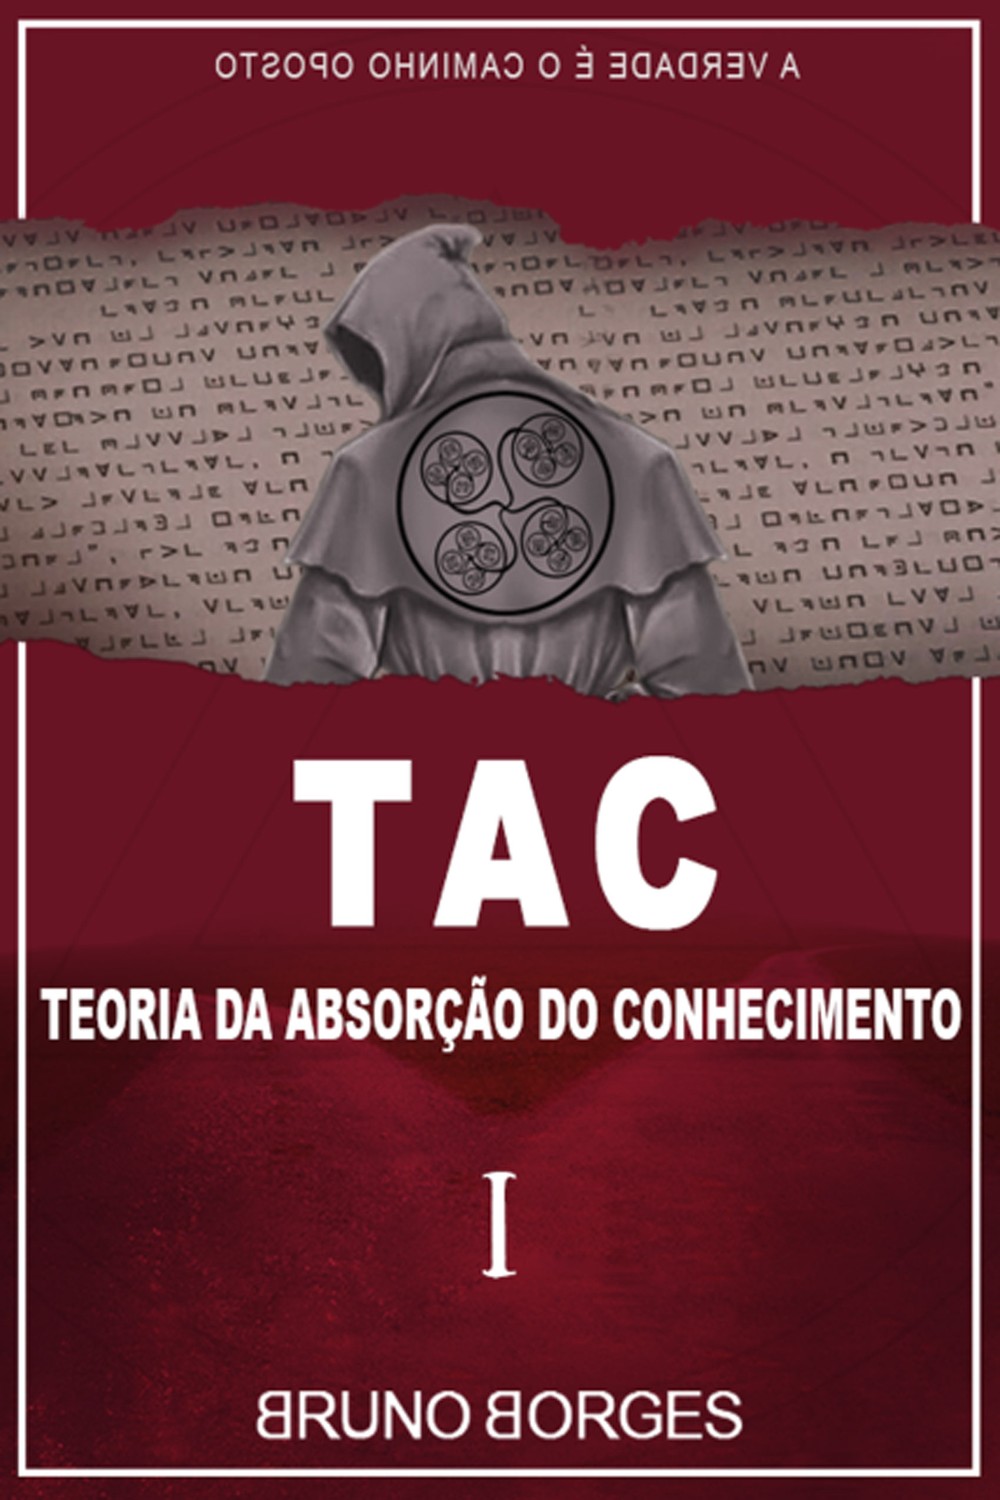 Capa do livro 'TAC: Teoria da Absorção do Conhecimento', de Bruno Borges, o 'menino do Acre' (Foto: Divulgação)